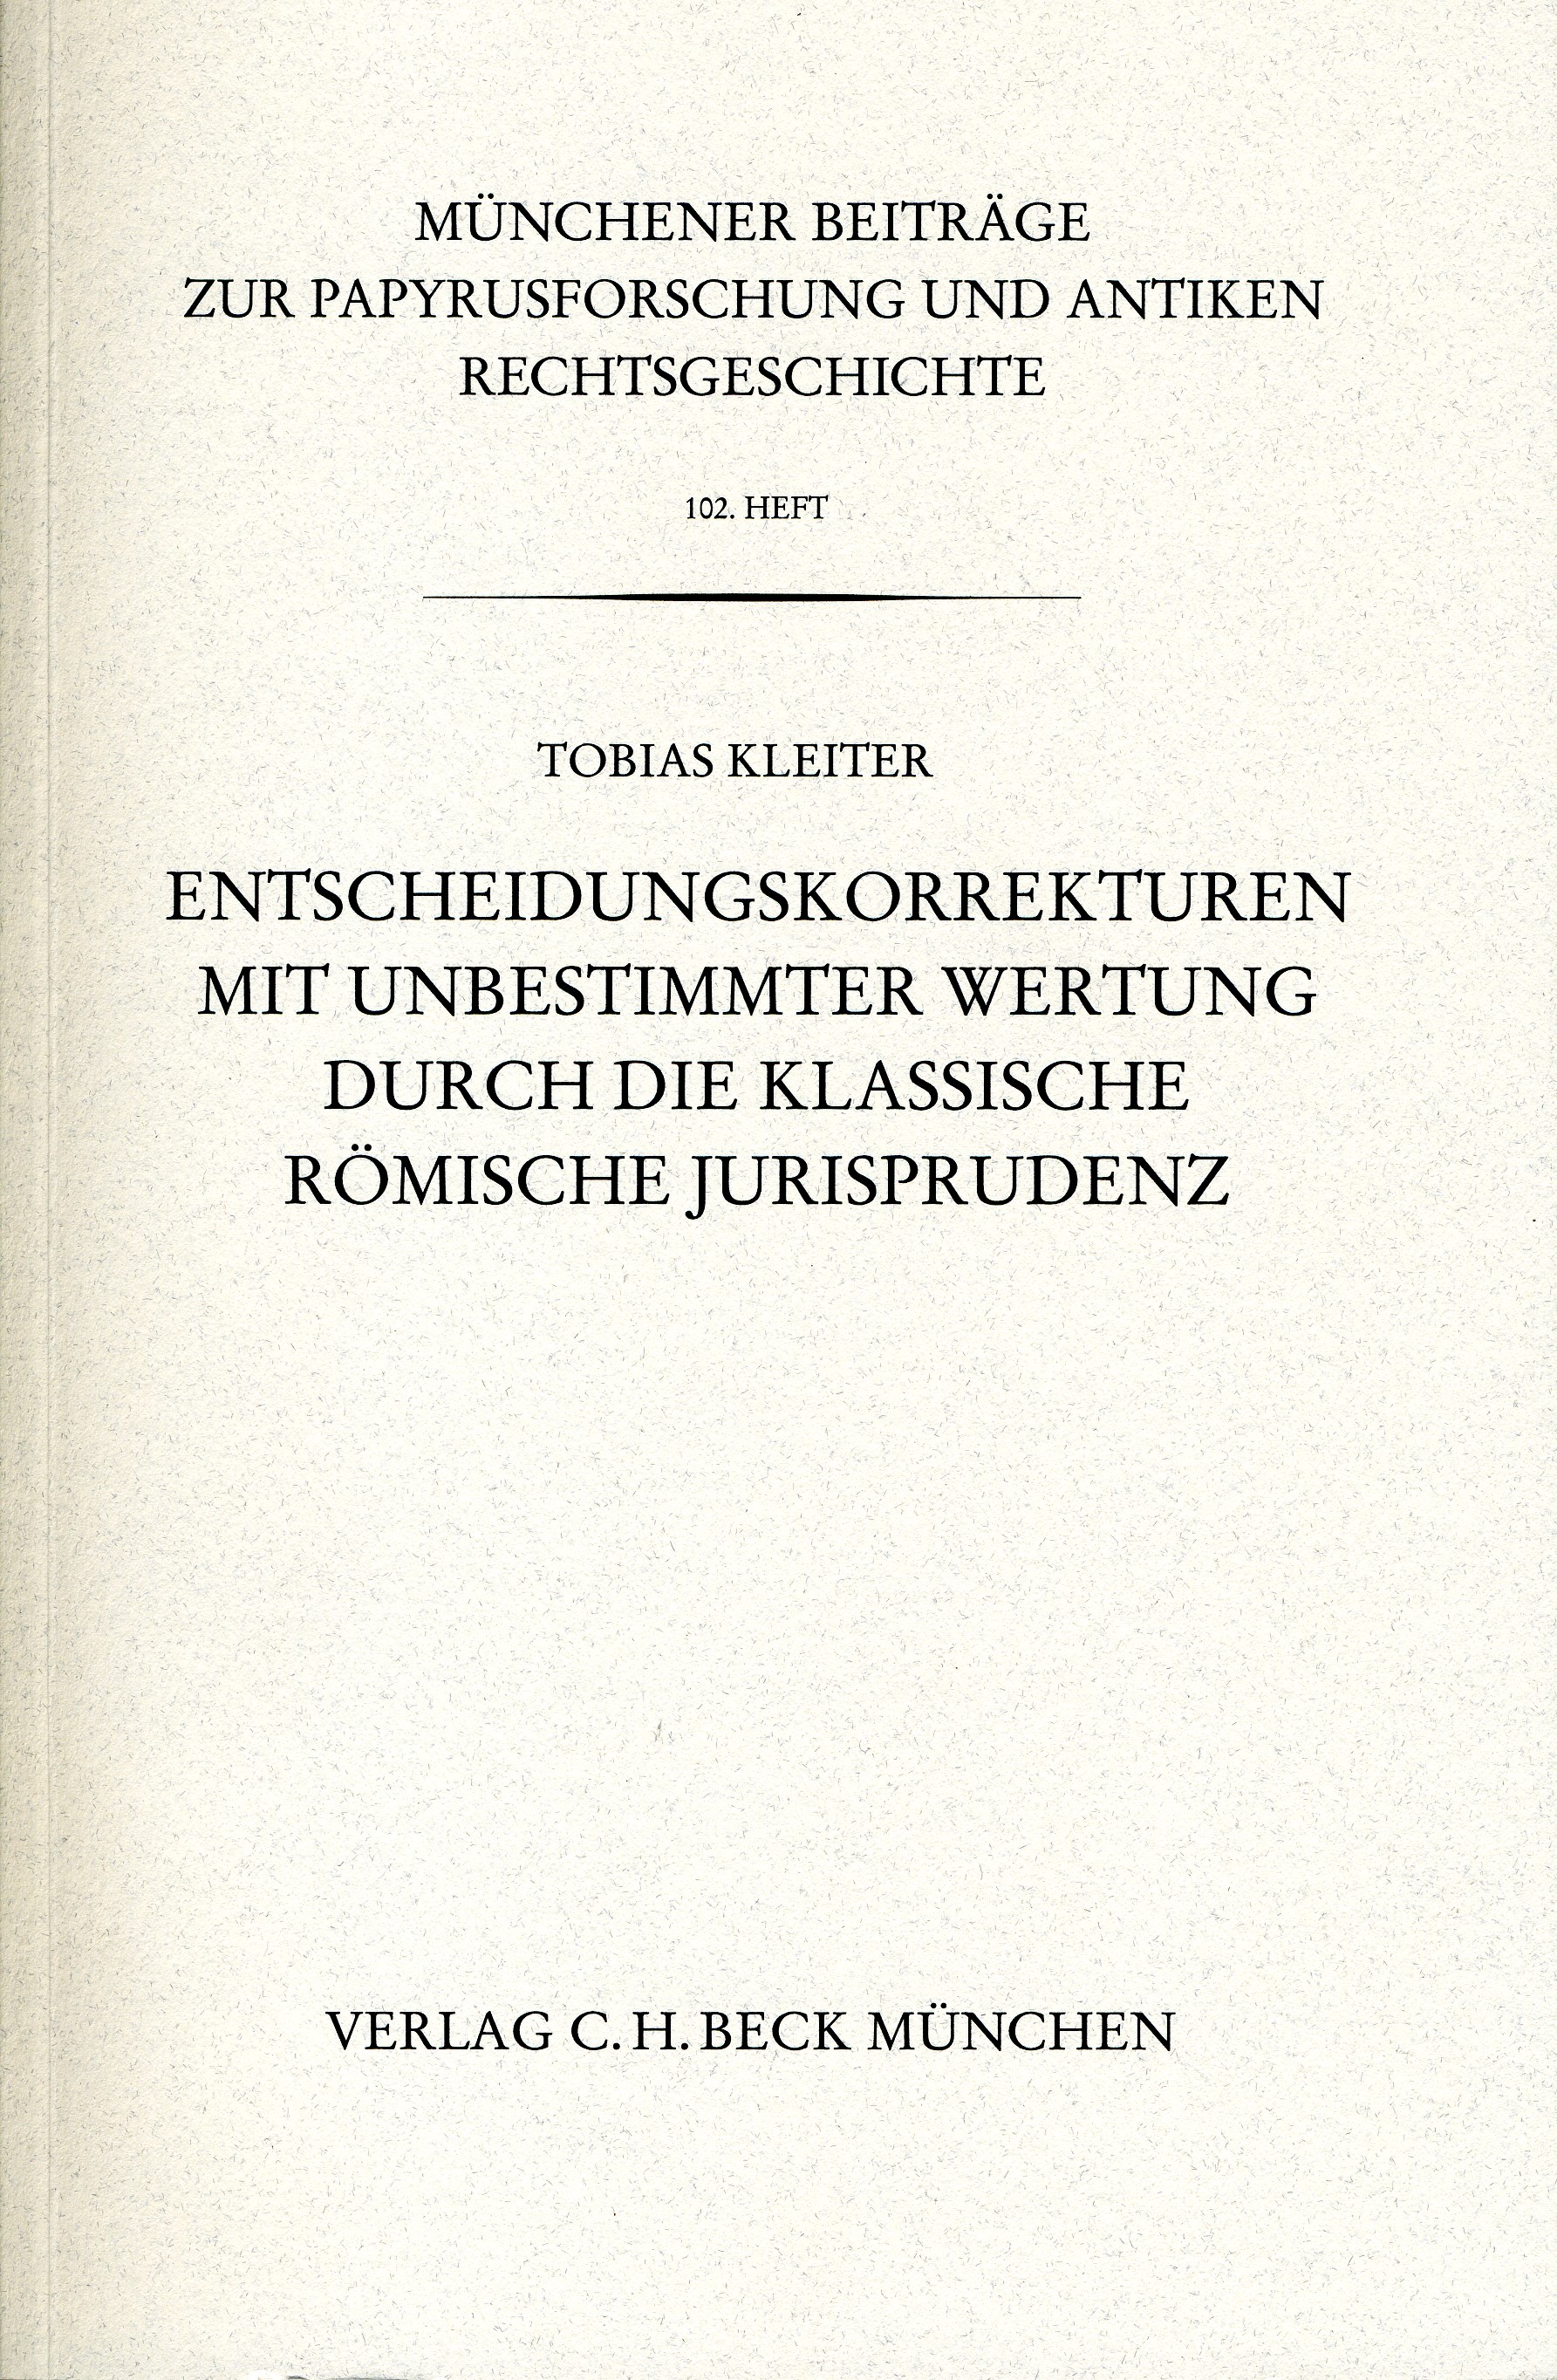 Cover: Kleiter, Tobias, Münchener Beiträge zur Papyrusforschung Heft 102